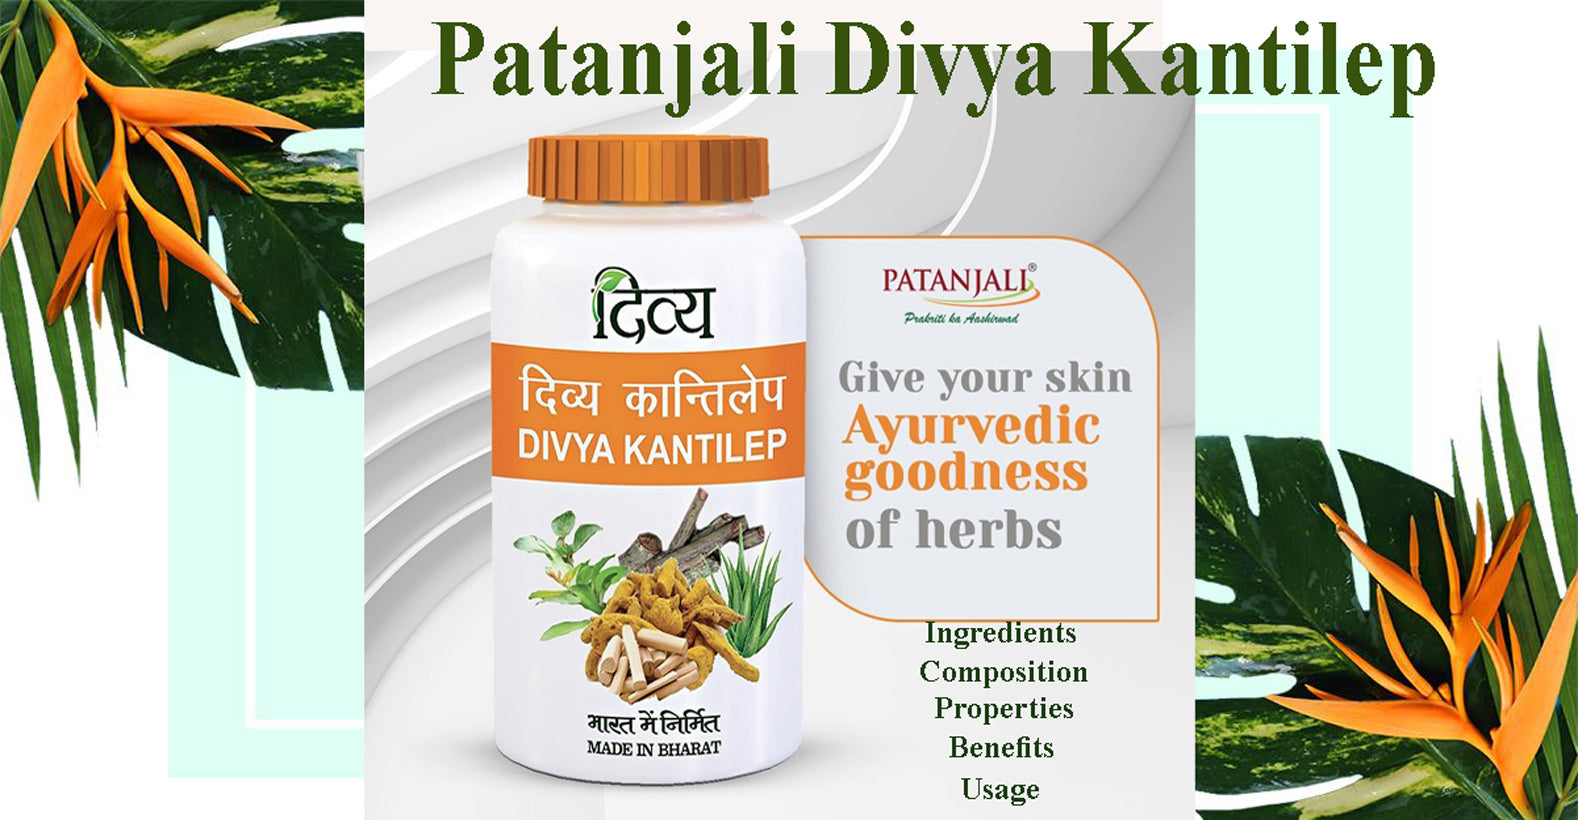 Patanjali Divya Kantilep - Ingredients, Composition, Properties, Benefits, Usage, Tips